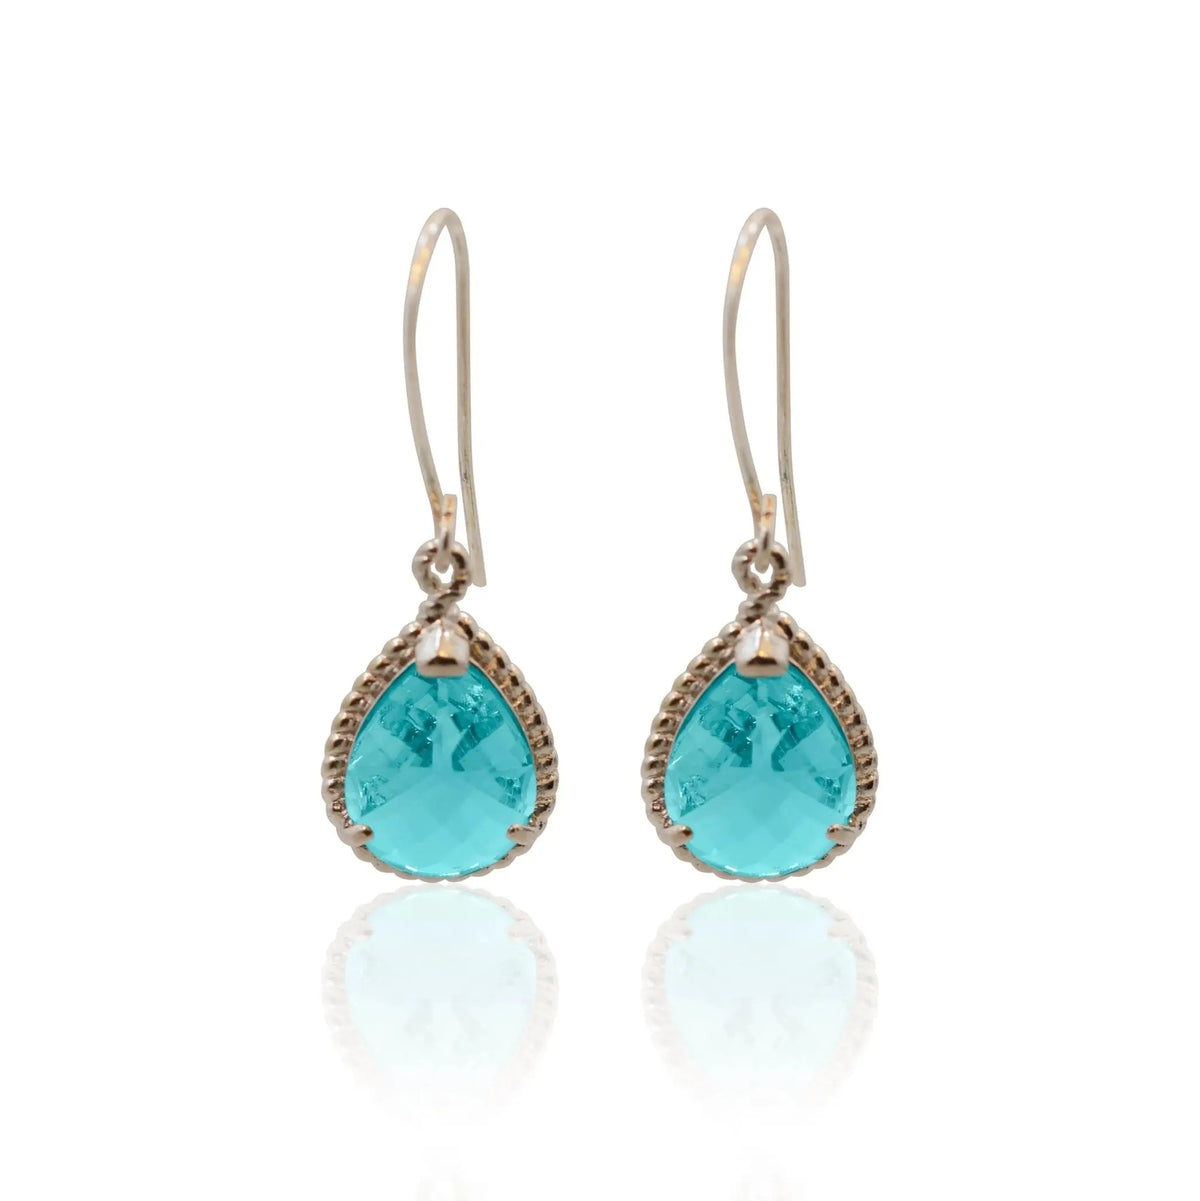 Aqua Exquisite Earrings - Mystic Soul Jewelry